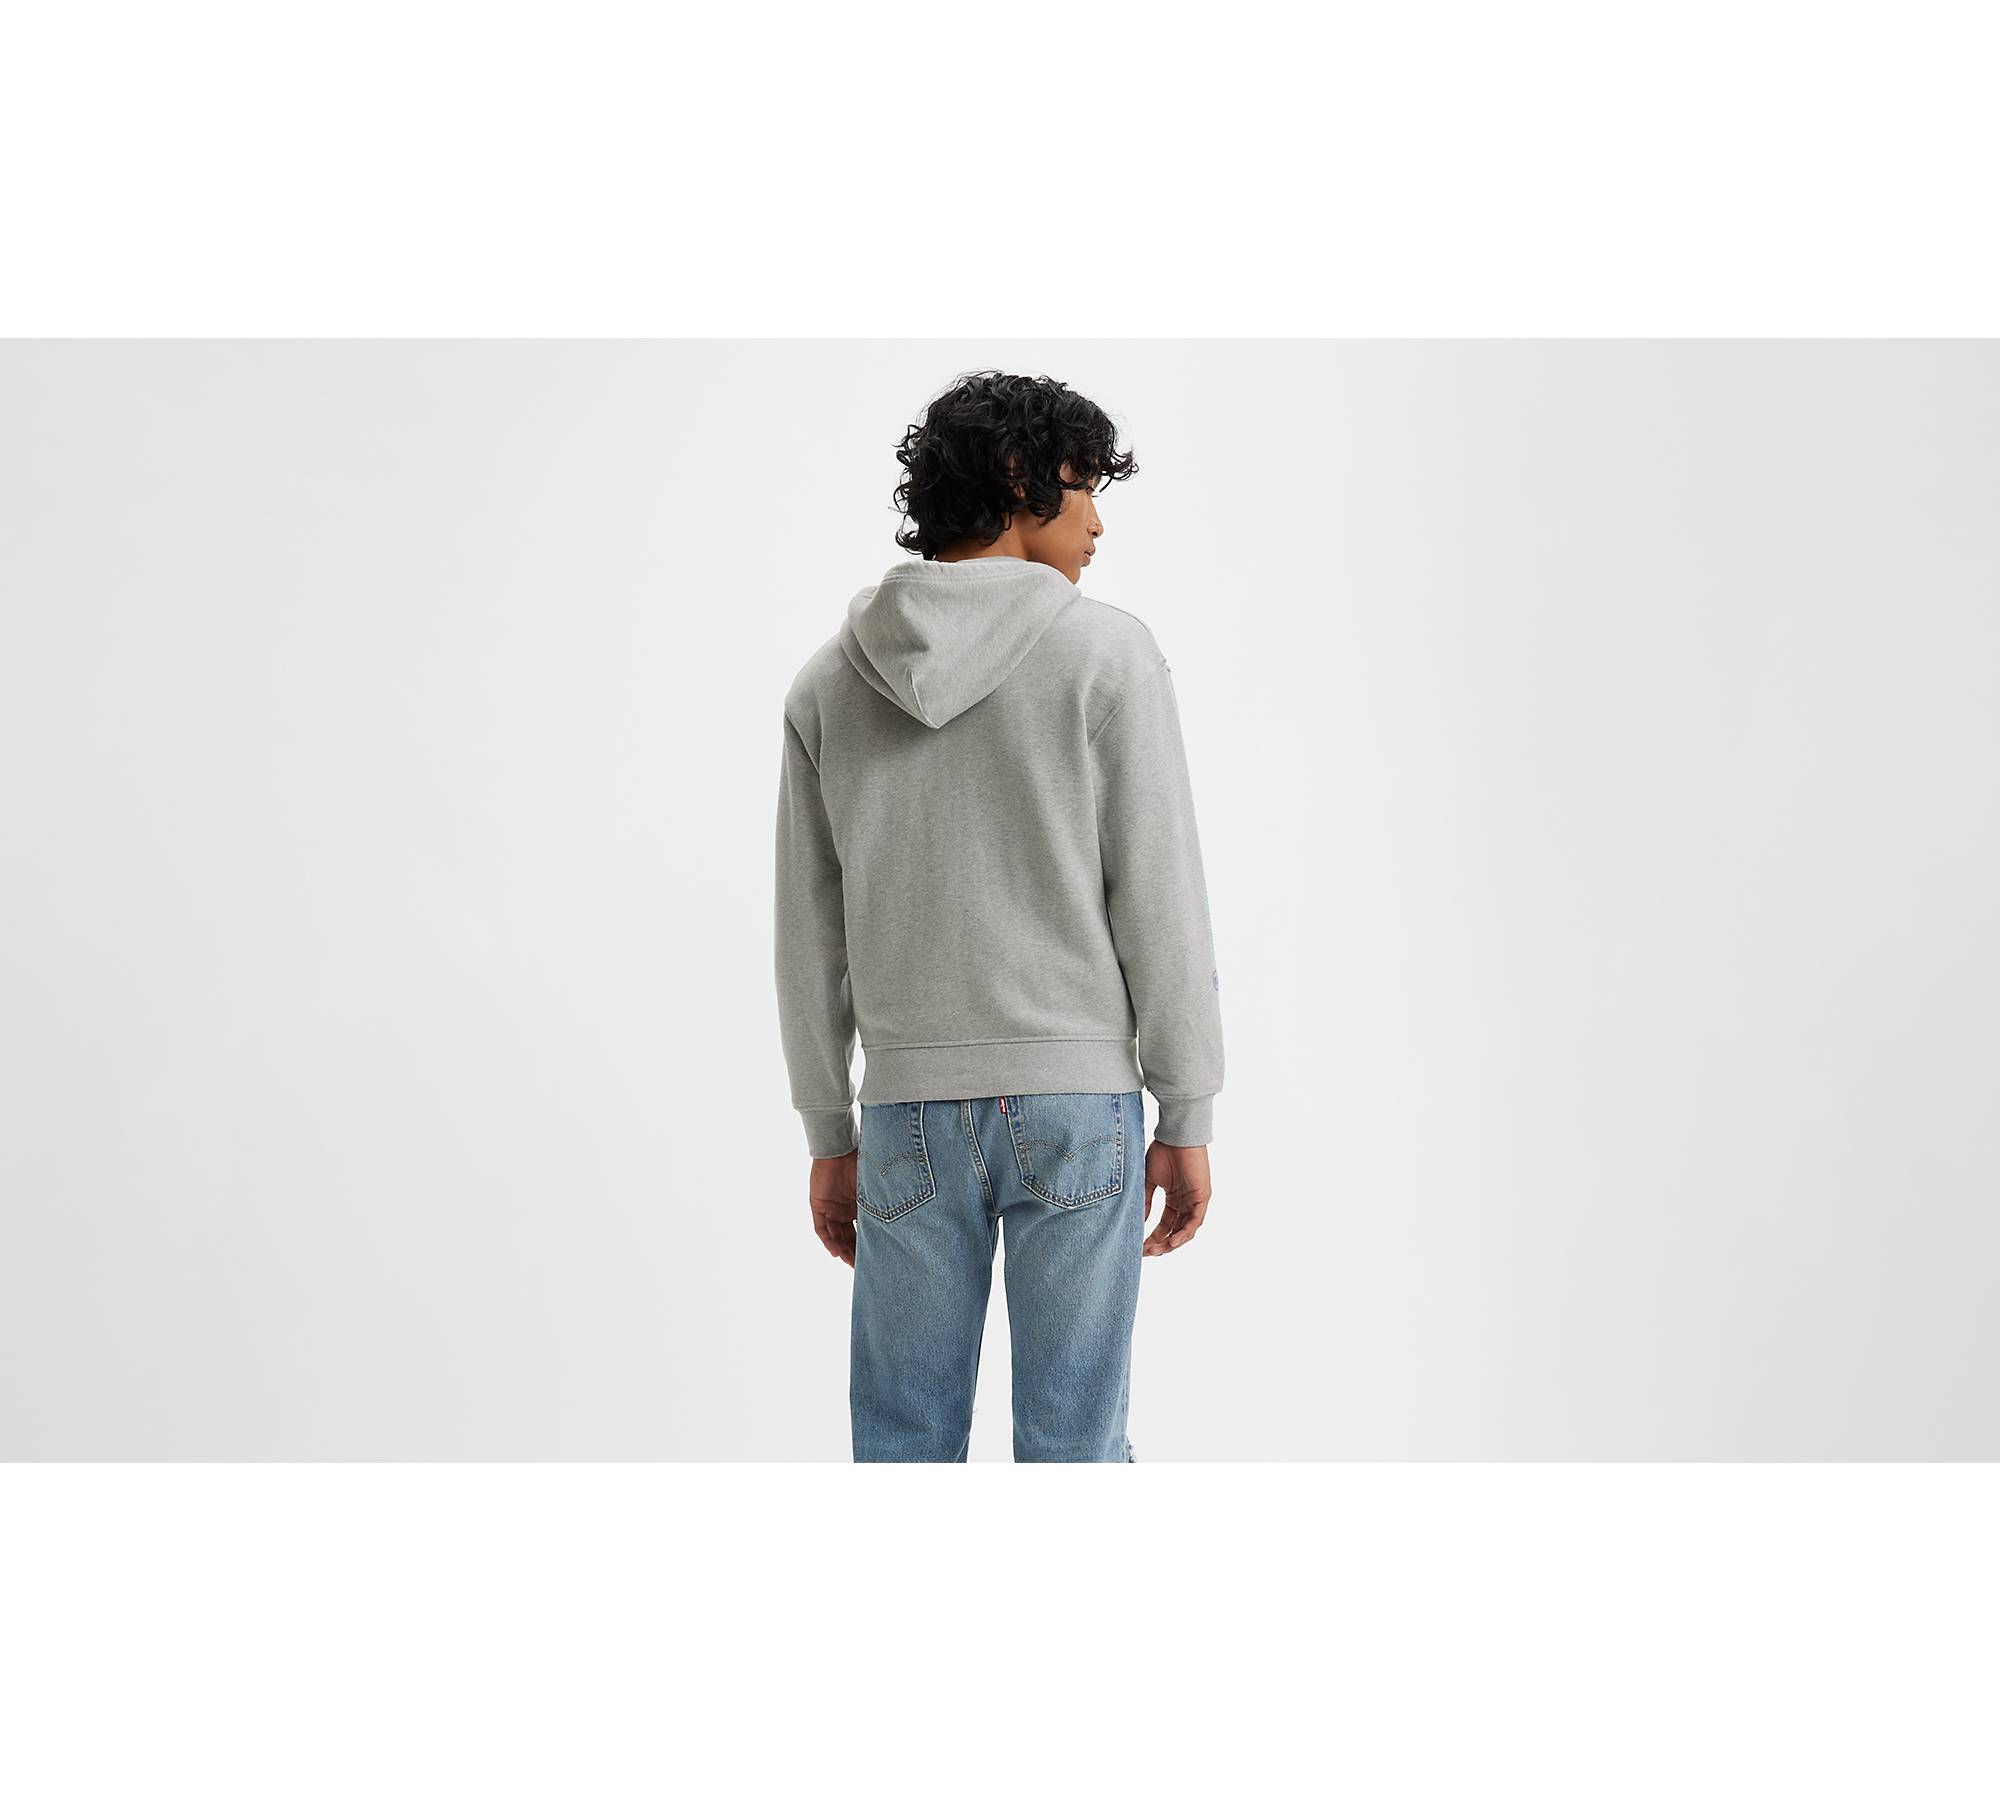 Relaxed Graphic Zip Up Hoodie Sweatshirt - Grey